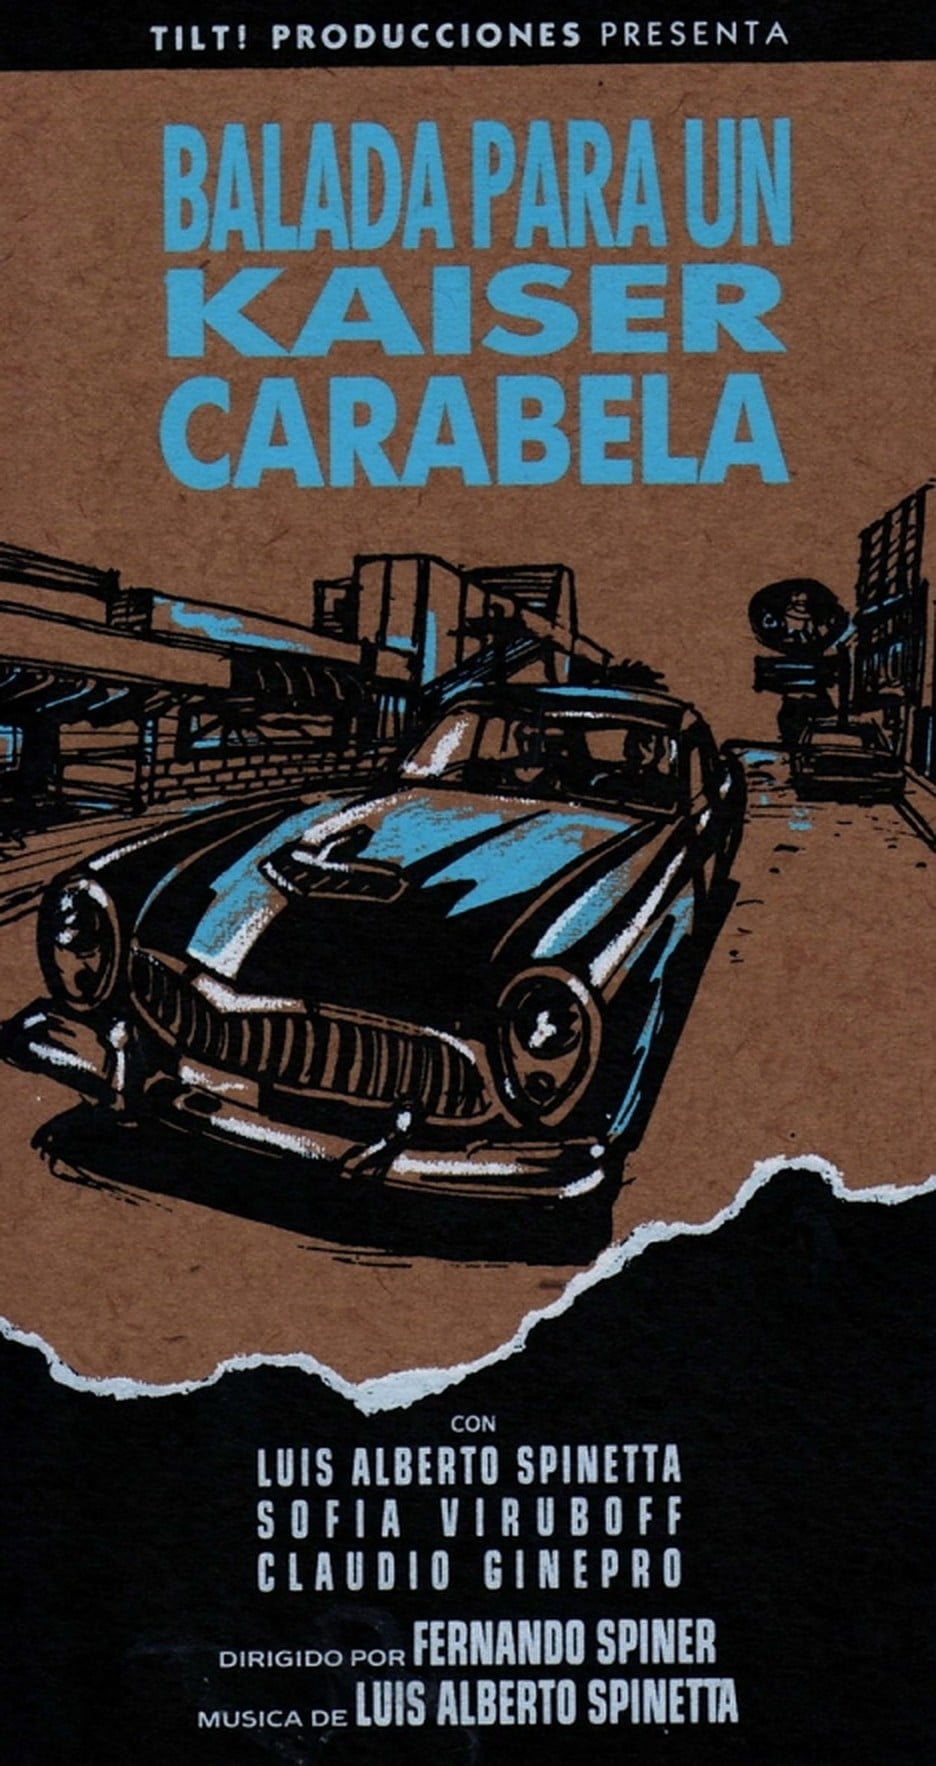 Ballad for a Kaiser Carabela